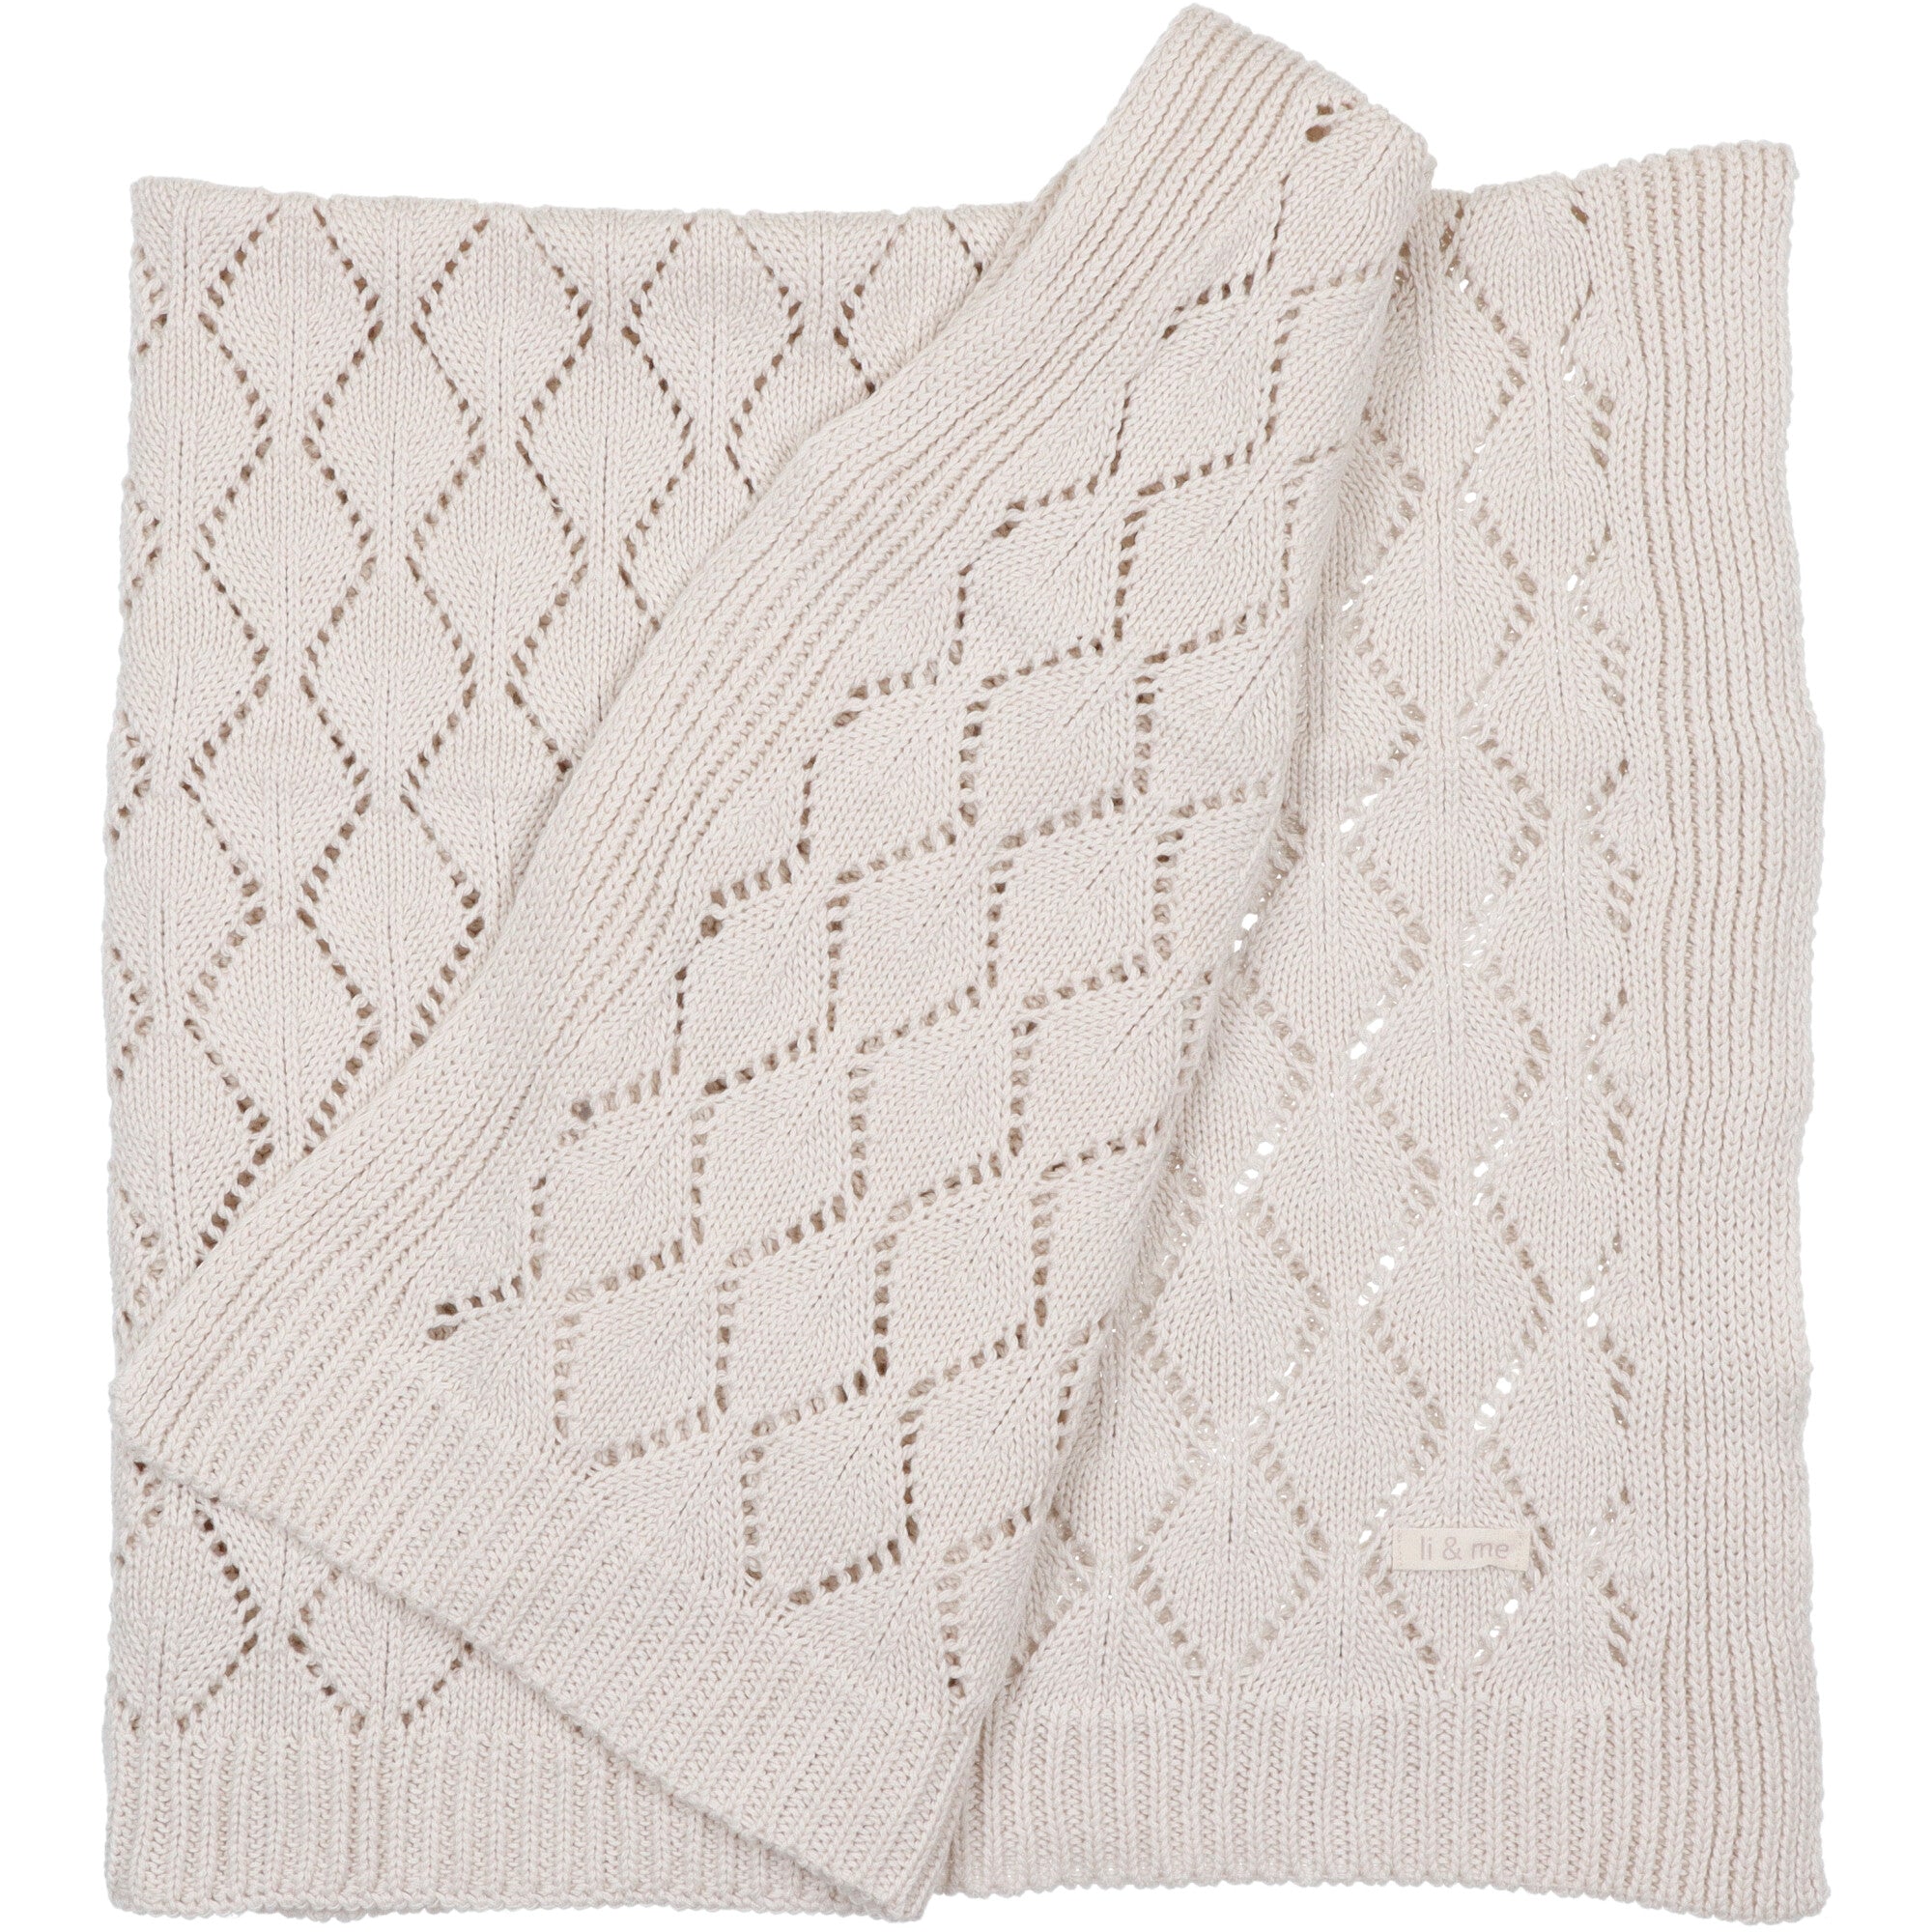 coperta-di-cotone-lavorata-a-rombi-colore-bianco-naturale-per-neonati